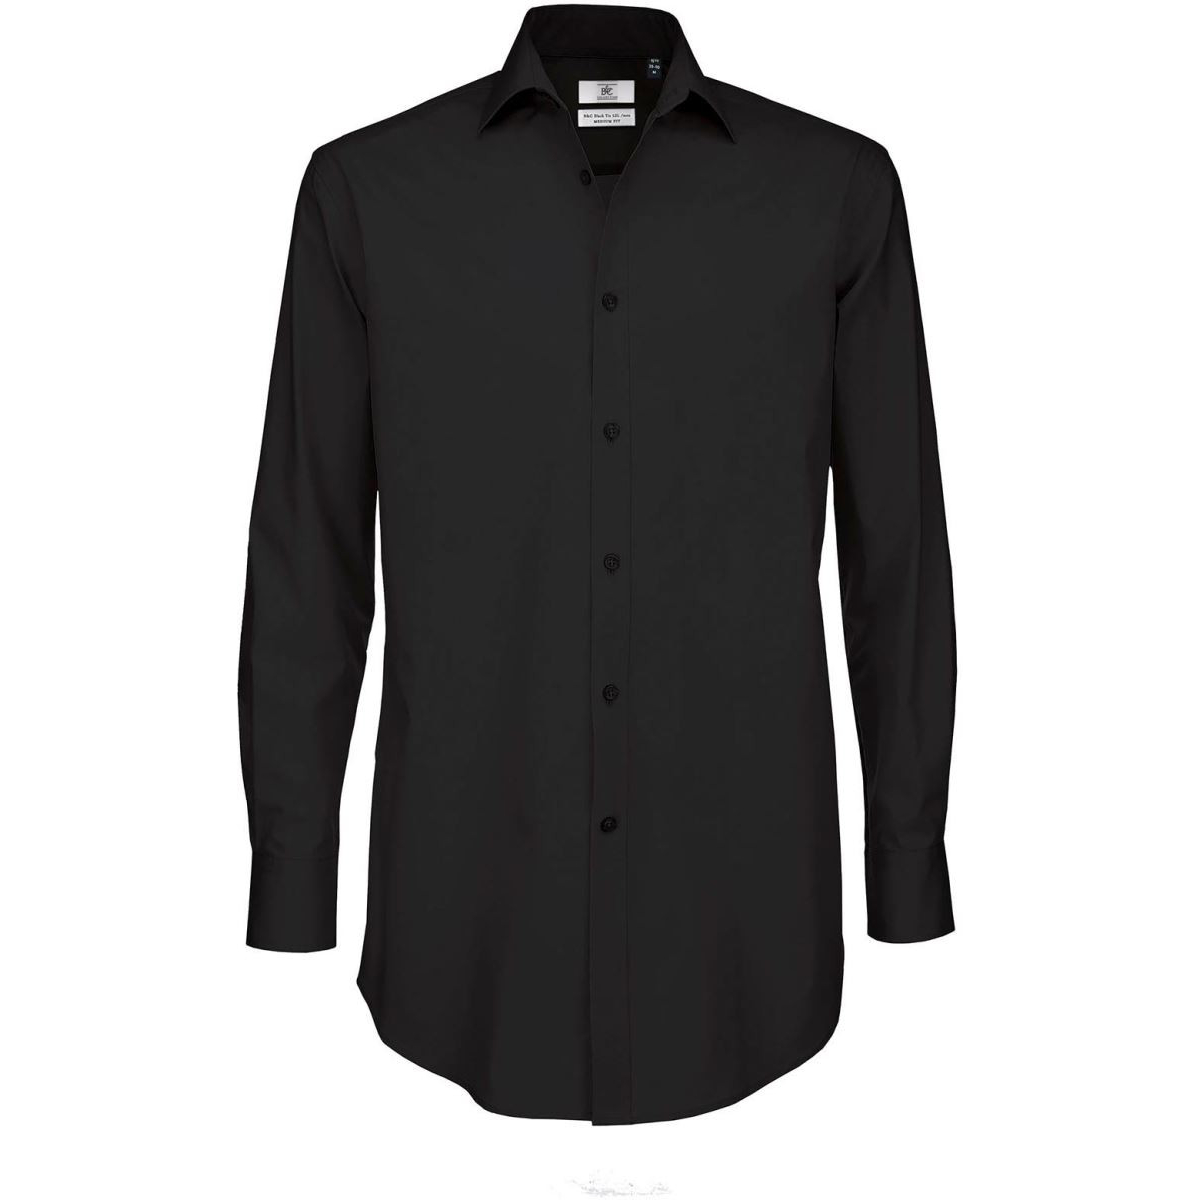 Pánská popelínová košile B&C Black Tie s dlouhým rukávem - černá, XXL